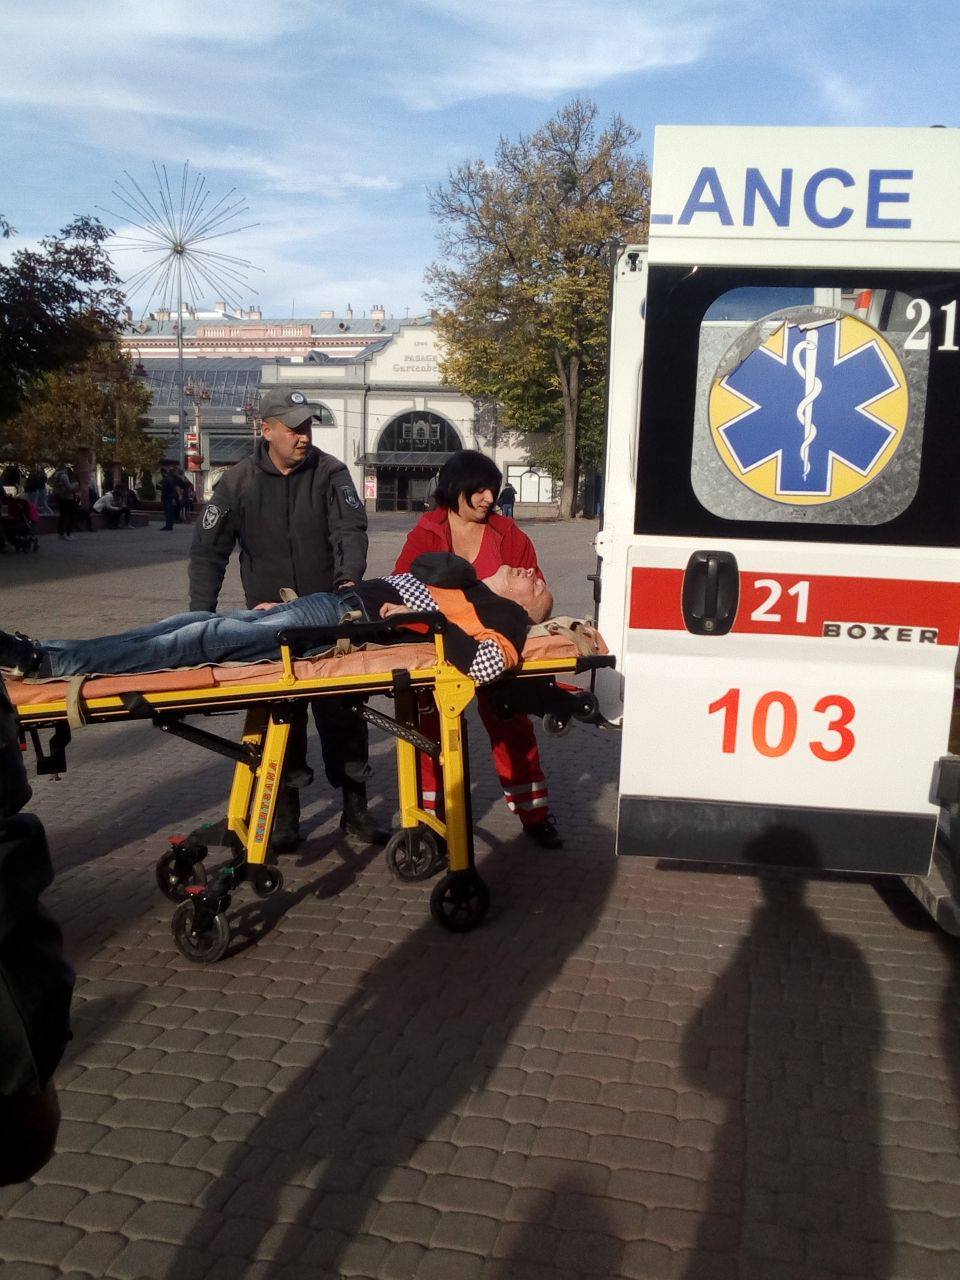 У центрі міста “муніципали” врятували чоловіка під час нападу епілепсії (ФОТО)